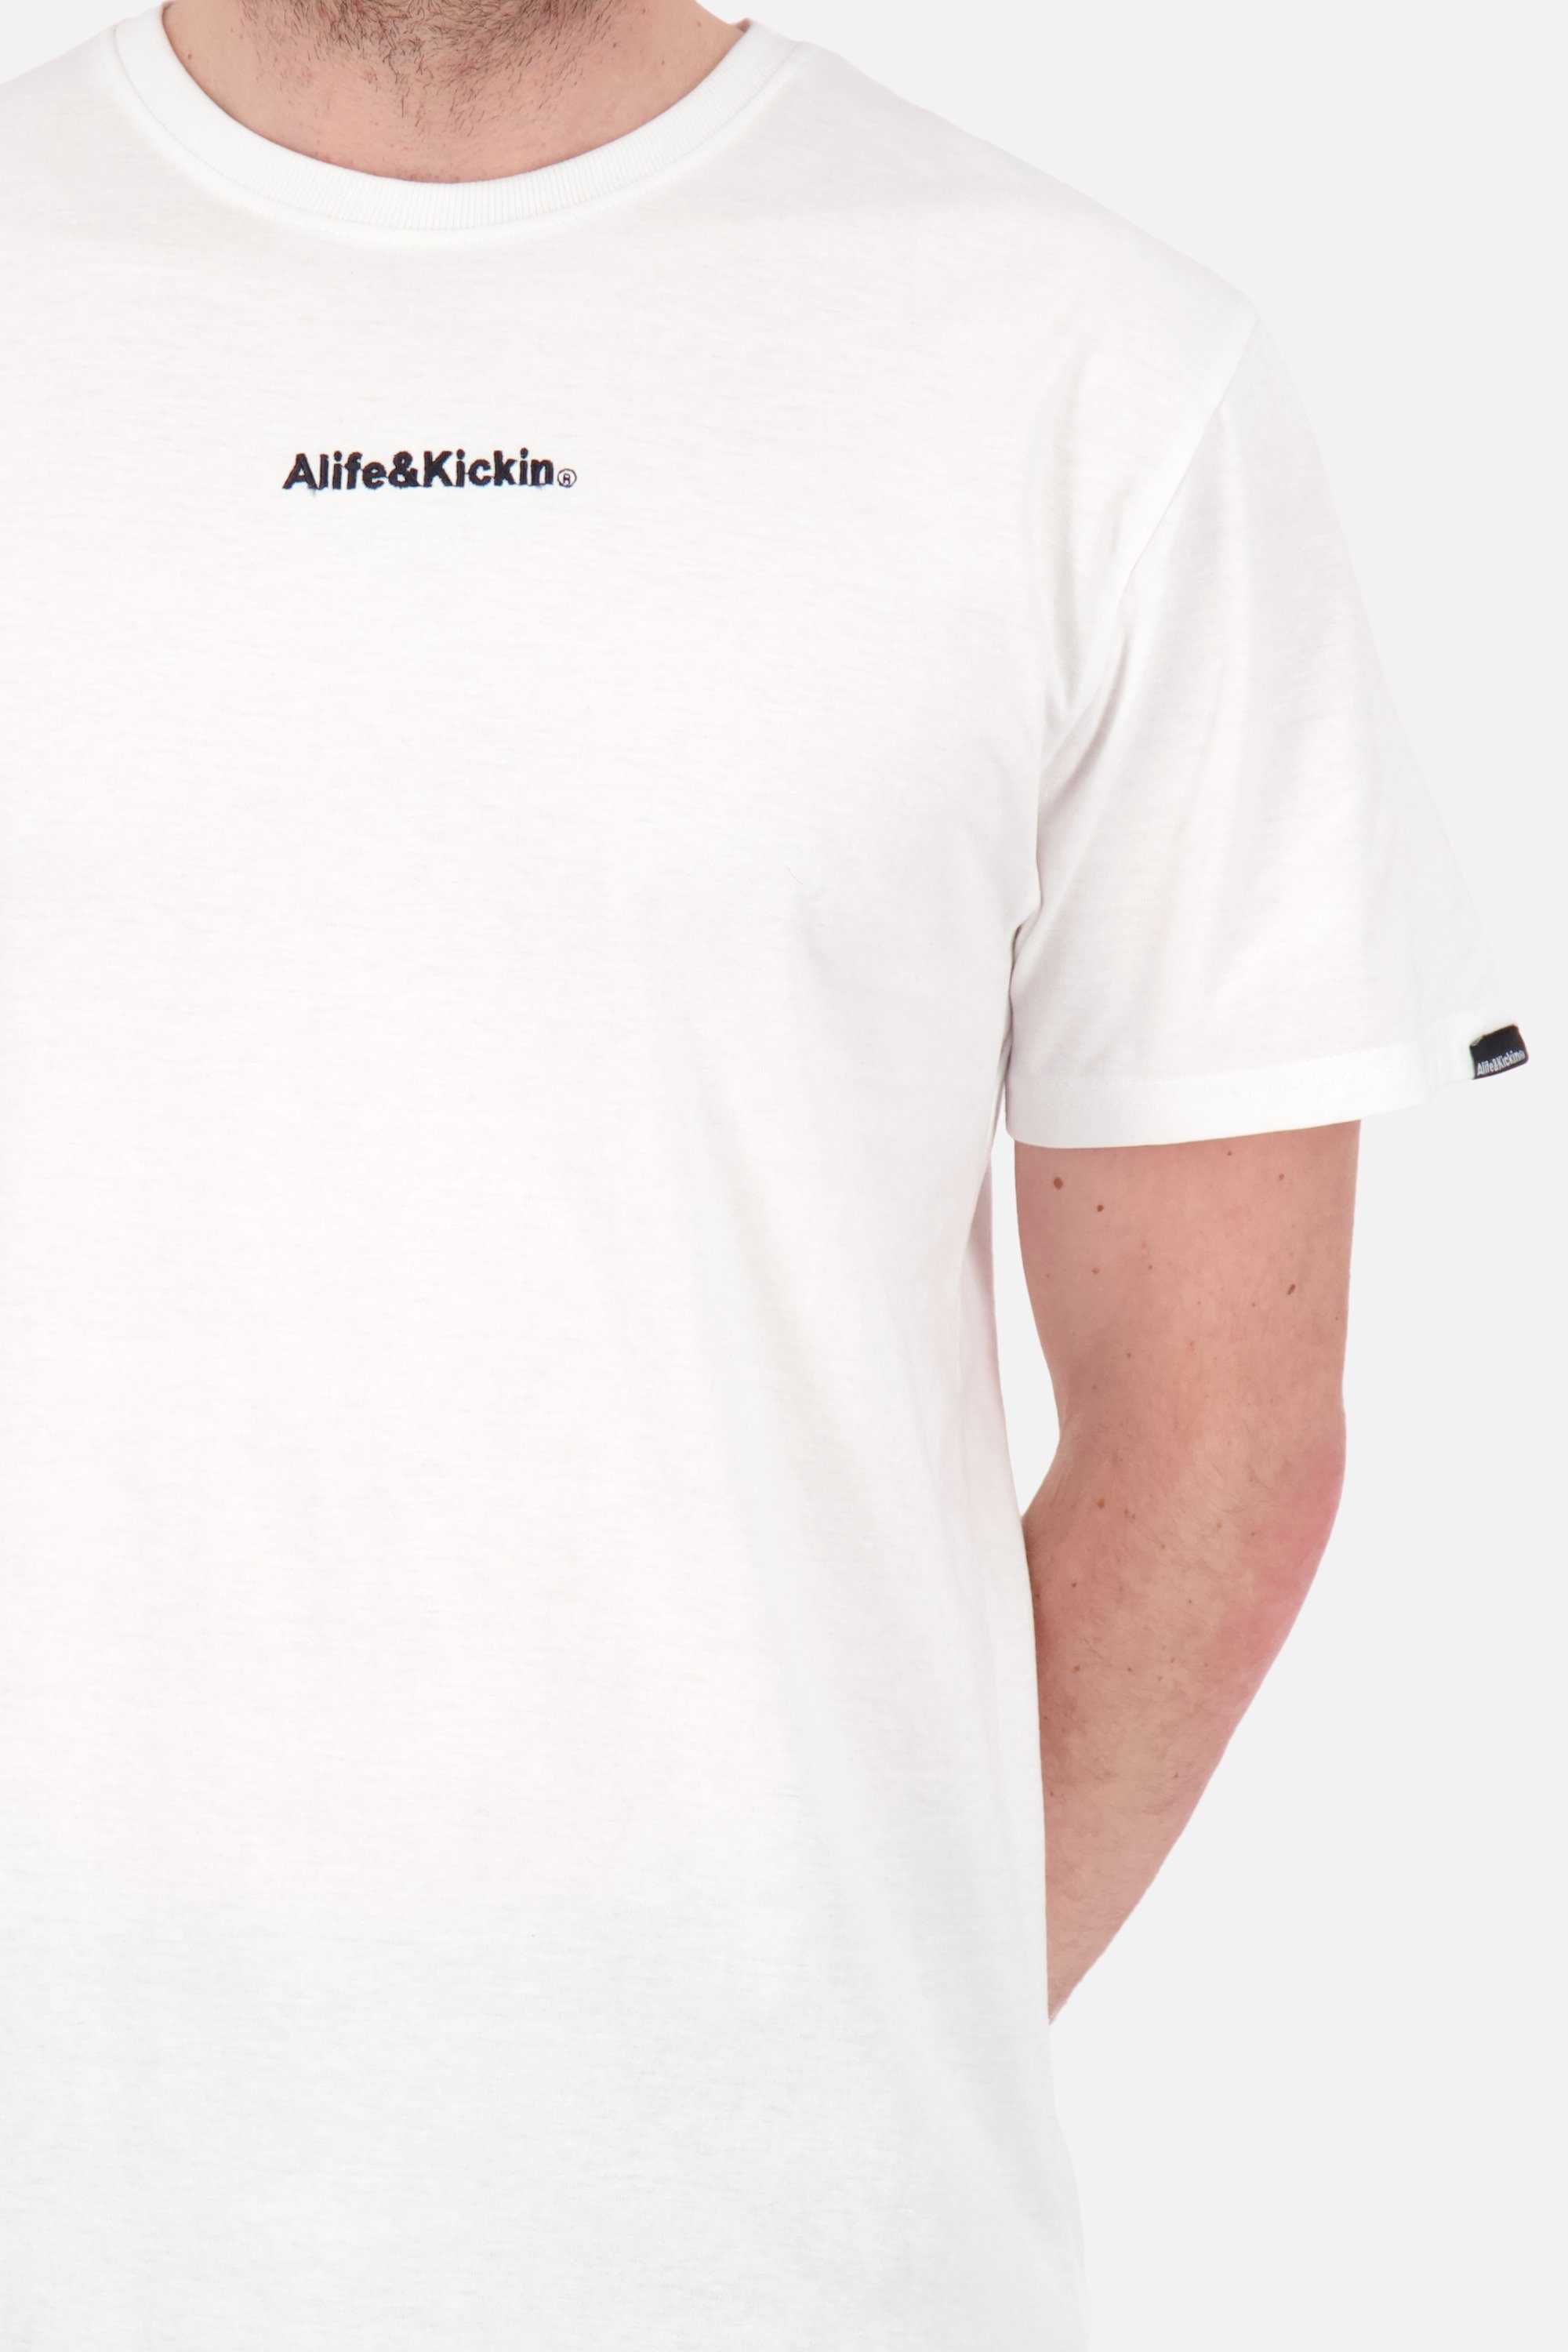 Alife Kickin Shirt AlfieAK Herren E & Rundhalsshirt Kurzarmshirt, white Shirt